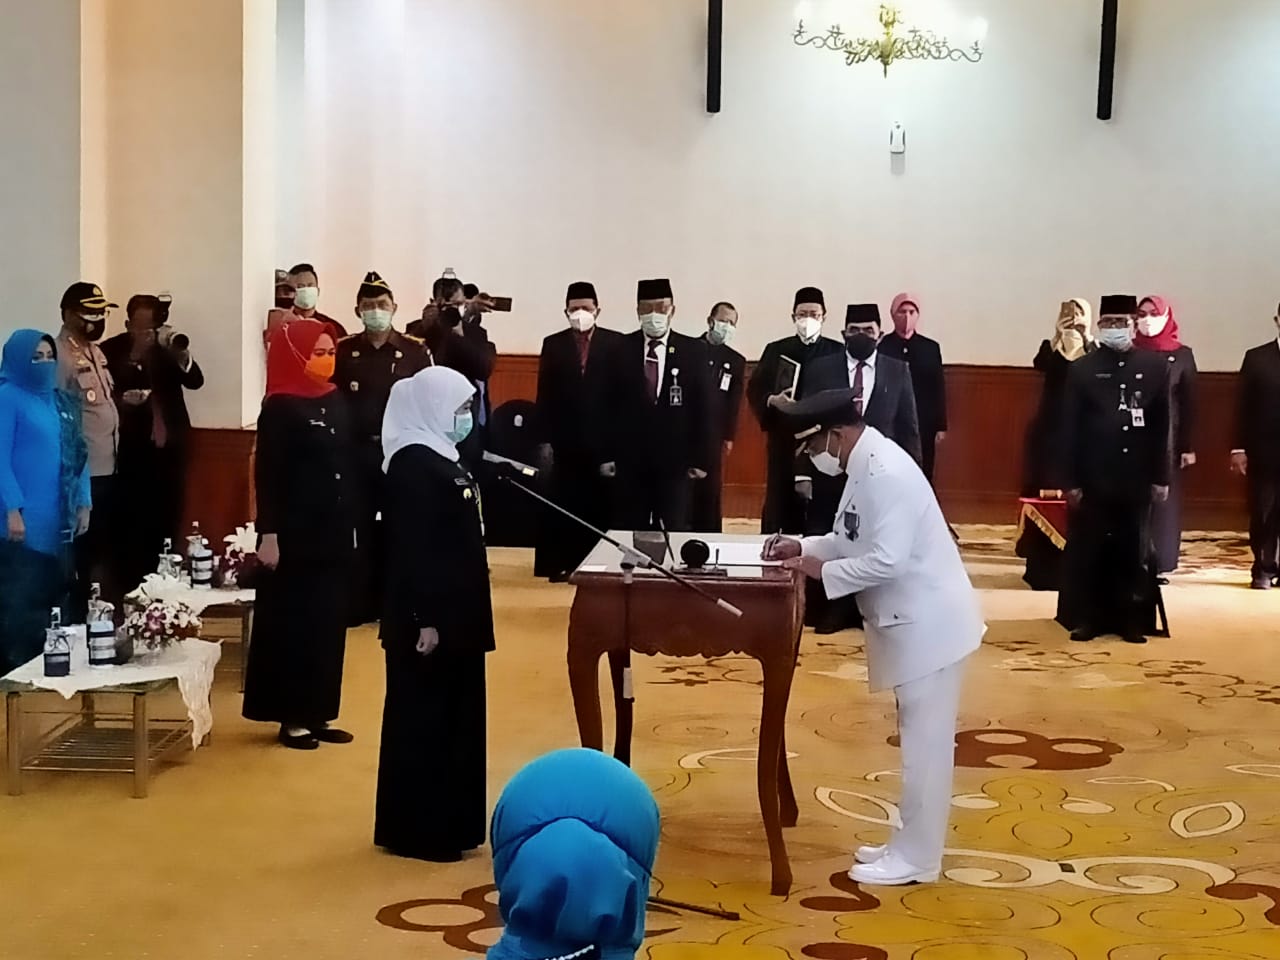 Pj Bupati Sidoarjo, Hudiyono menandatangani pakta integritas di hadapan Gubernur Jatim Khofifah Indar Parawansa dalam pelantikan Pj Bupati Sidoarjo di Gedung Negara Grahadi, Surabaya, Kamis 1 Oktober 2020. (Foto: Fariz Yarbo)